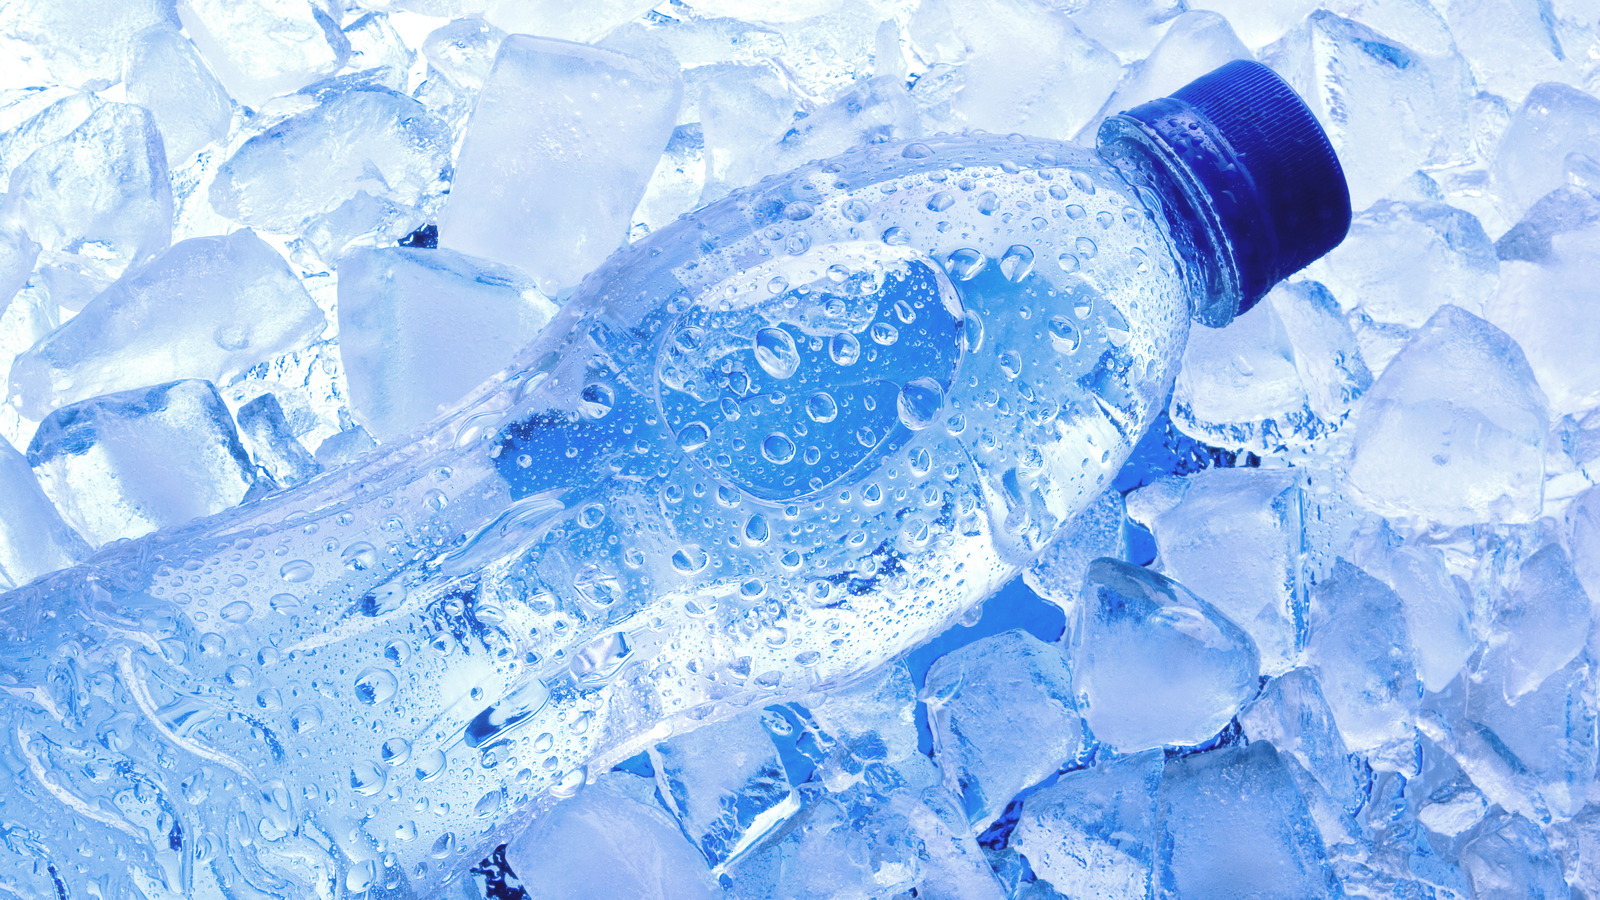 https://www.healthdigest.com/img/gallery/is-drinking-from-a-frozen-plastic-water-bottle-safe/l-intro-1638892768.jpg